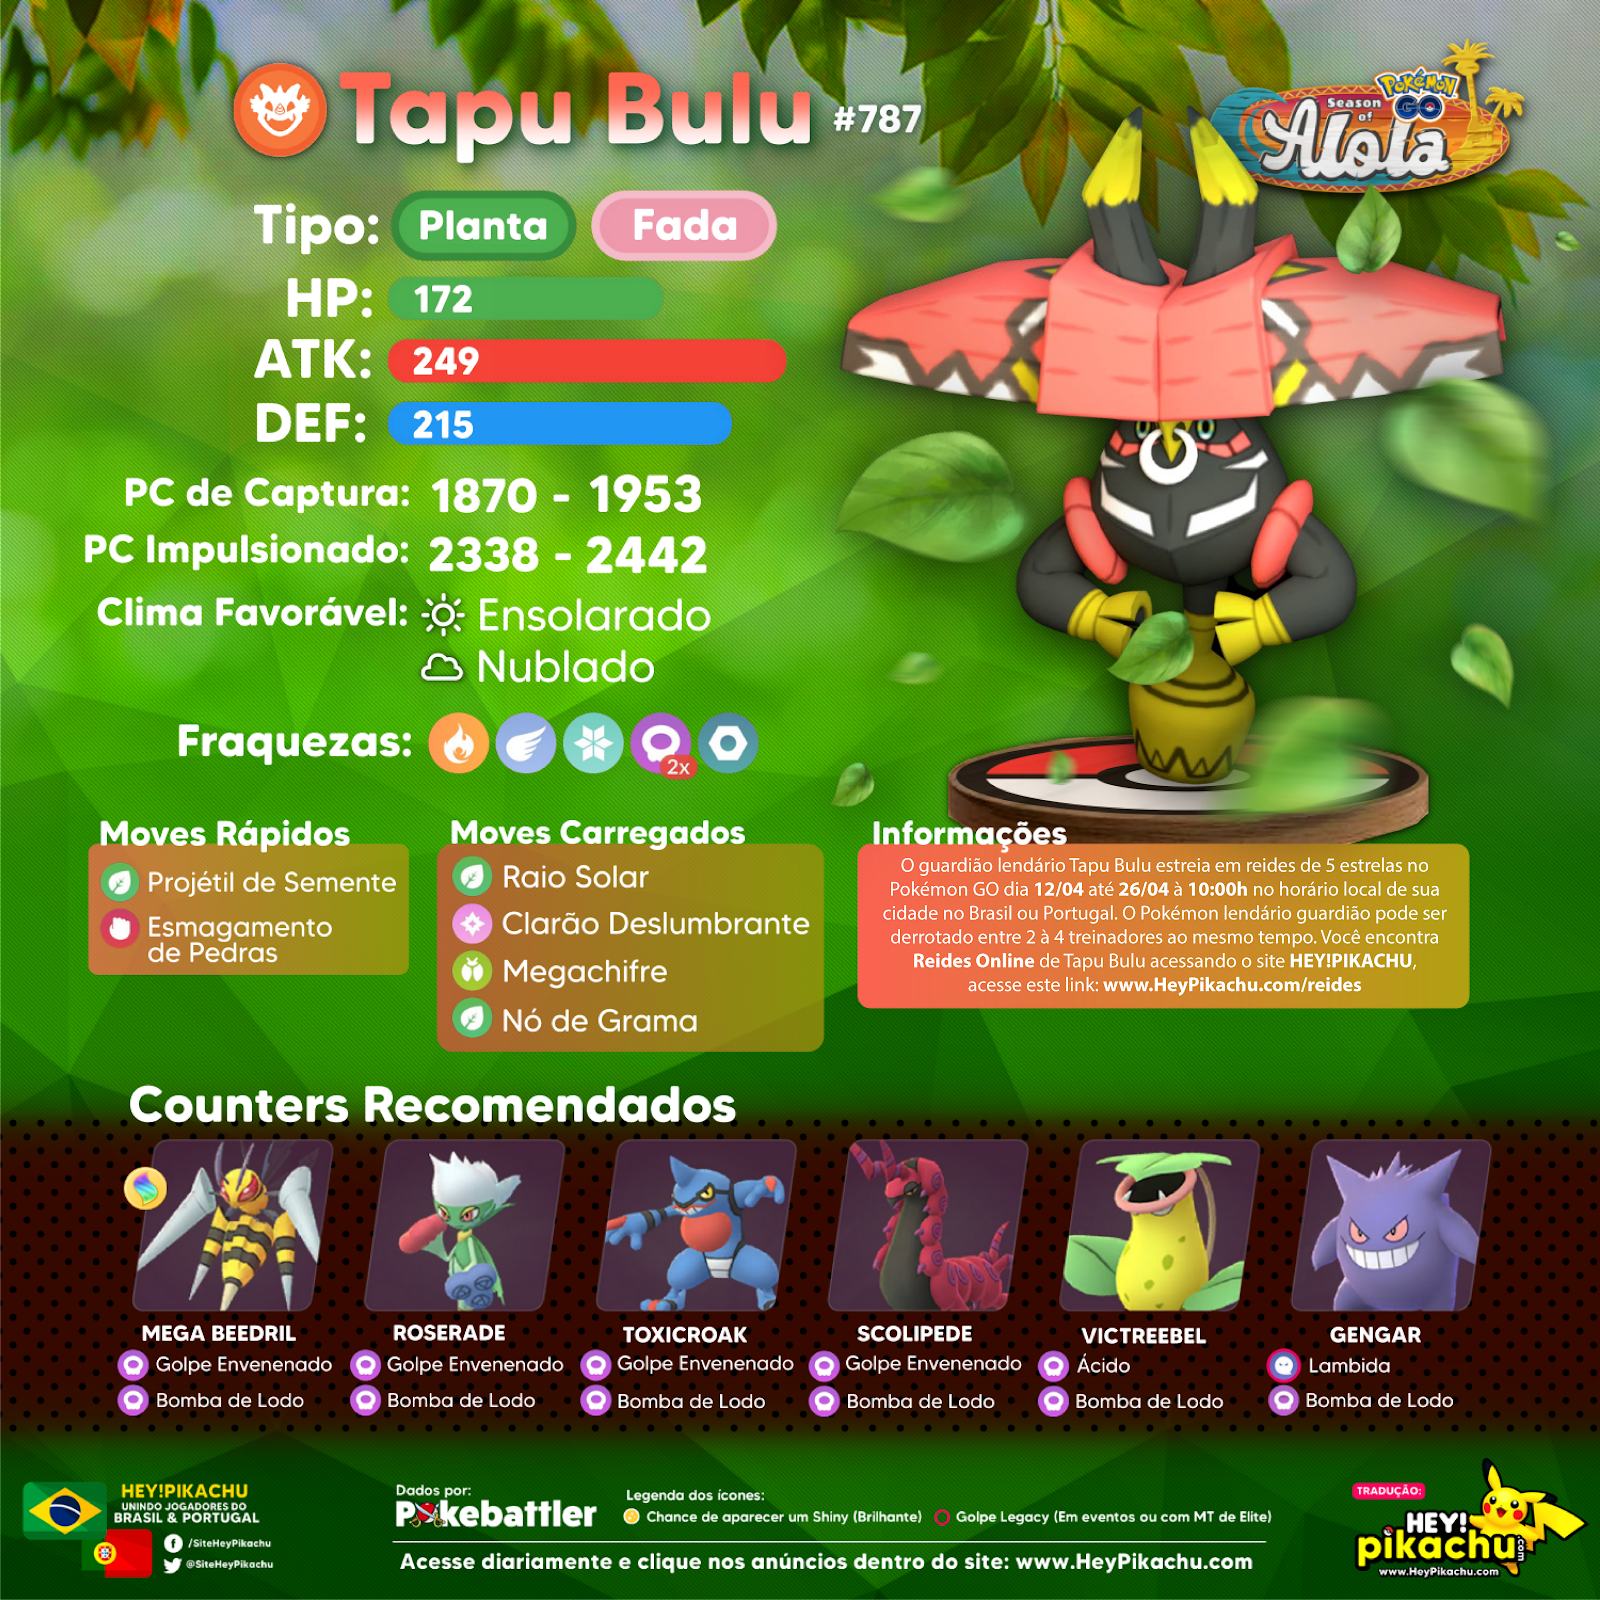 Jogada Excelente on X: Pokémon GO: Chefes de Reide disponíveis com a  chegada de Tapu Bulu.  / X